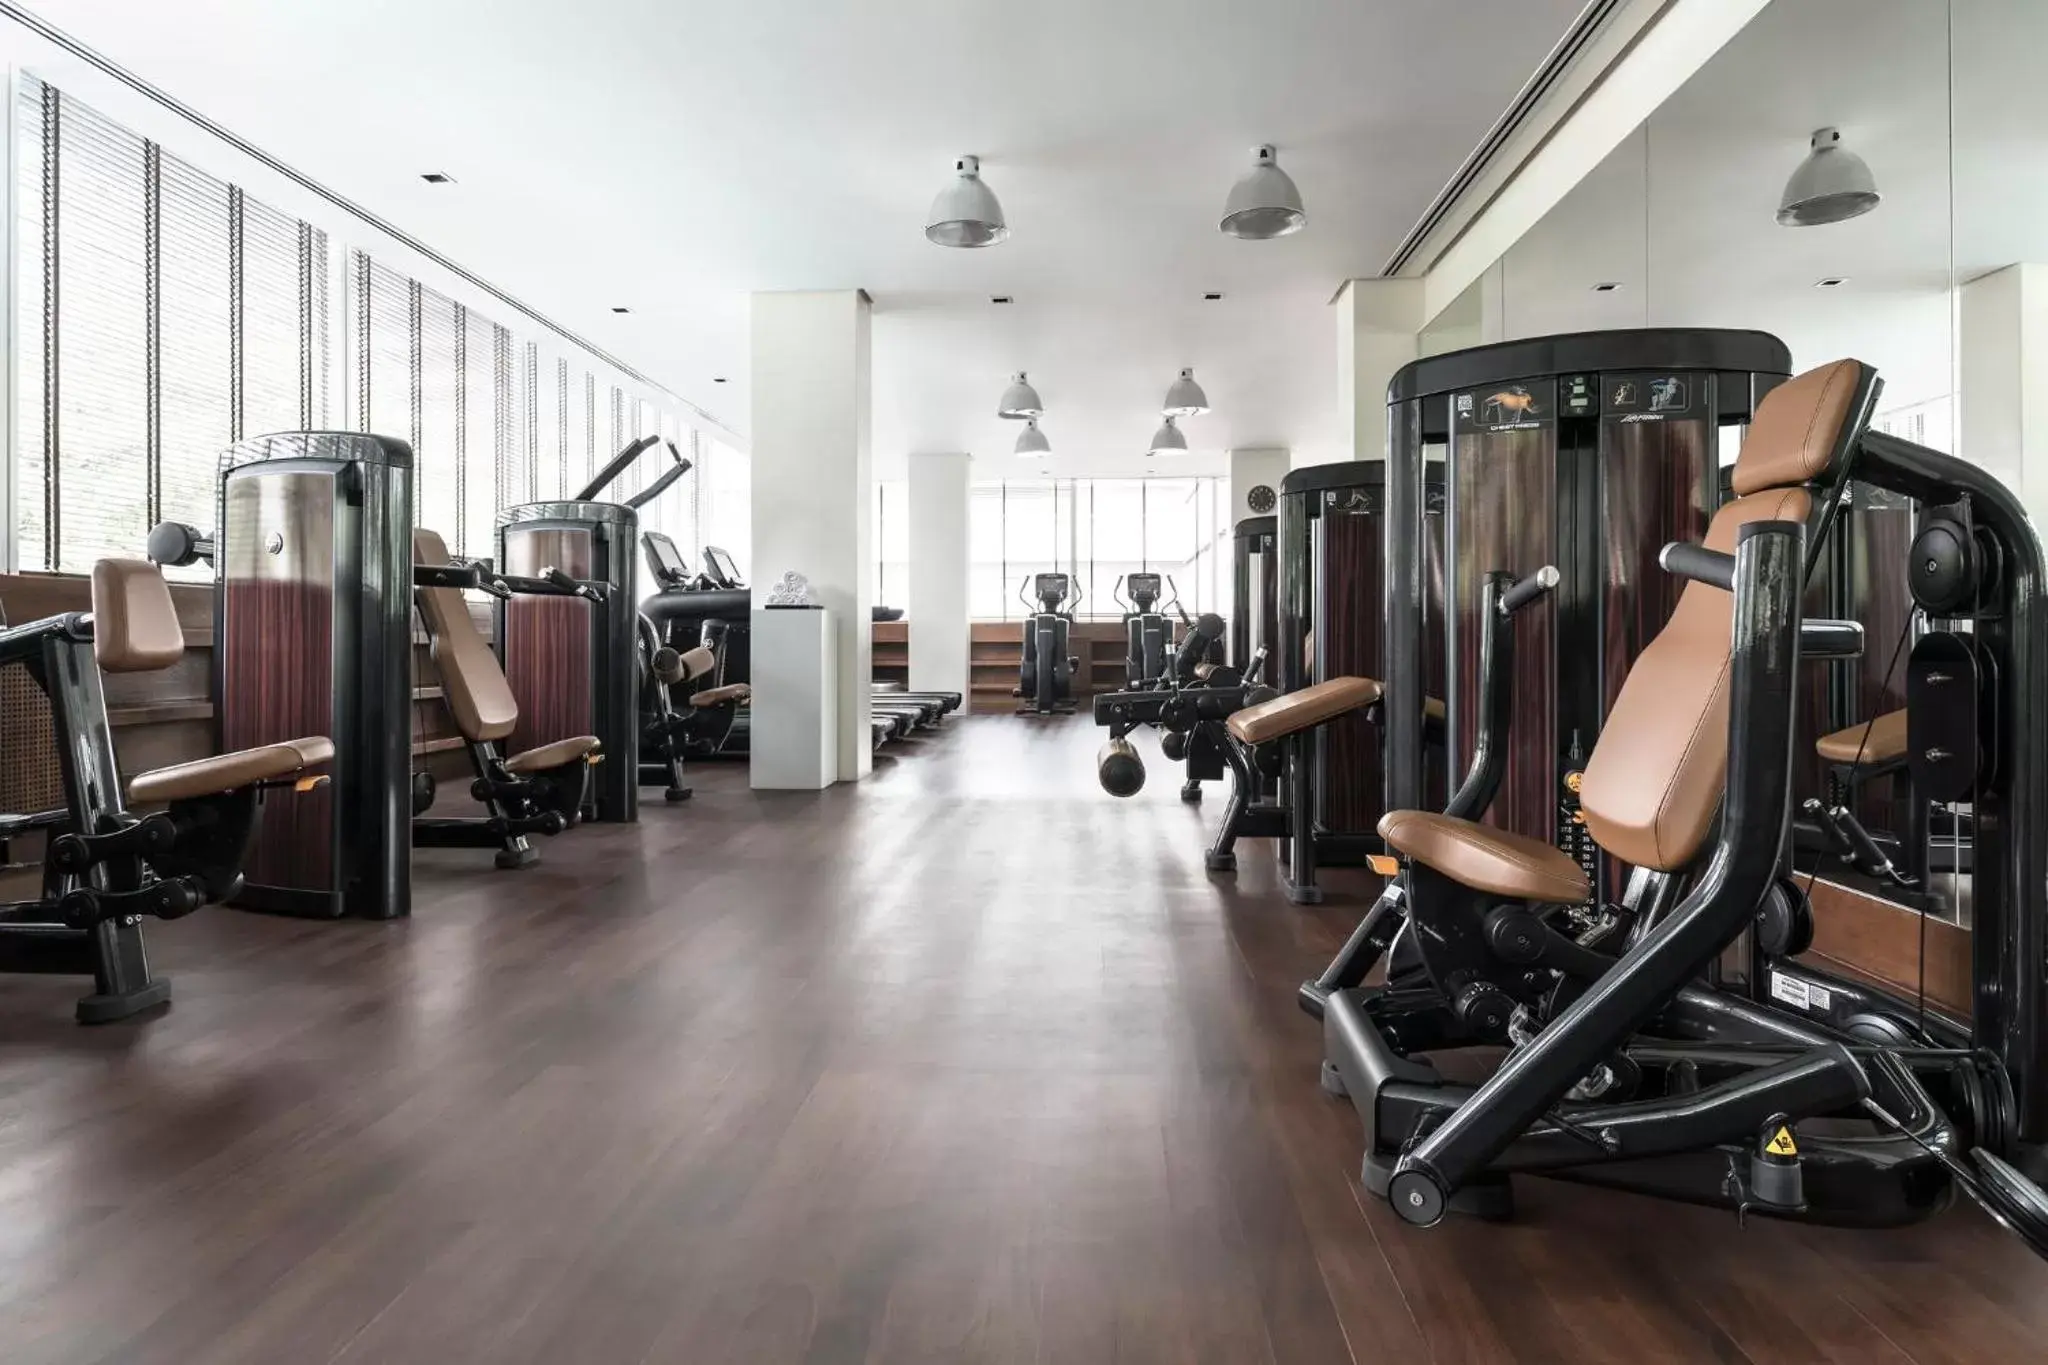 Fitness centre/facilities, Fitness Center/Facilities in COMO Metropolitan Bangkok